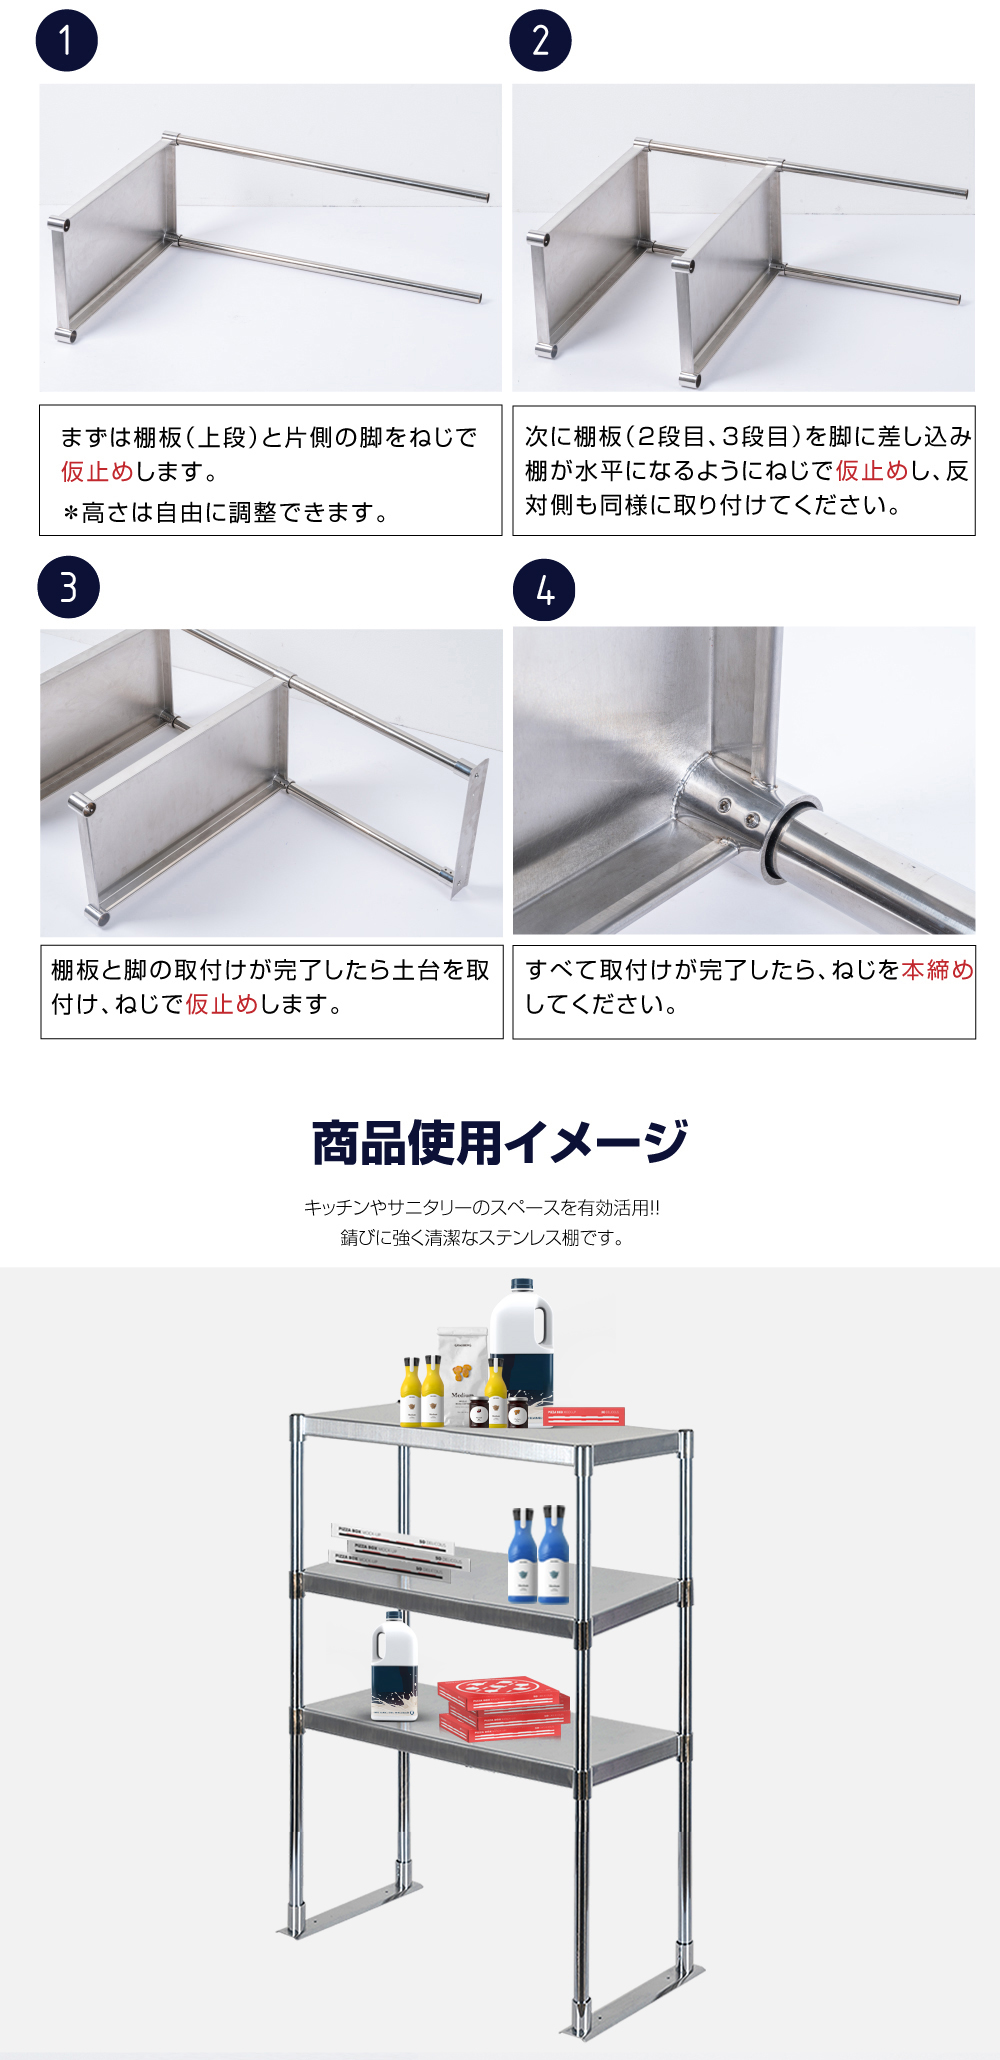 高昇ストア / ステンレス製 業務用 キッチン置き棚 3段タイプ